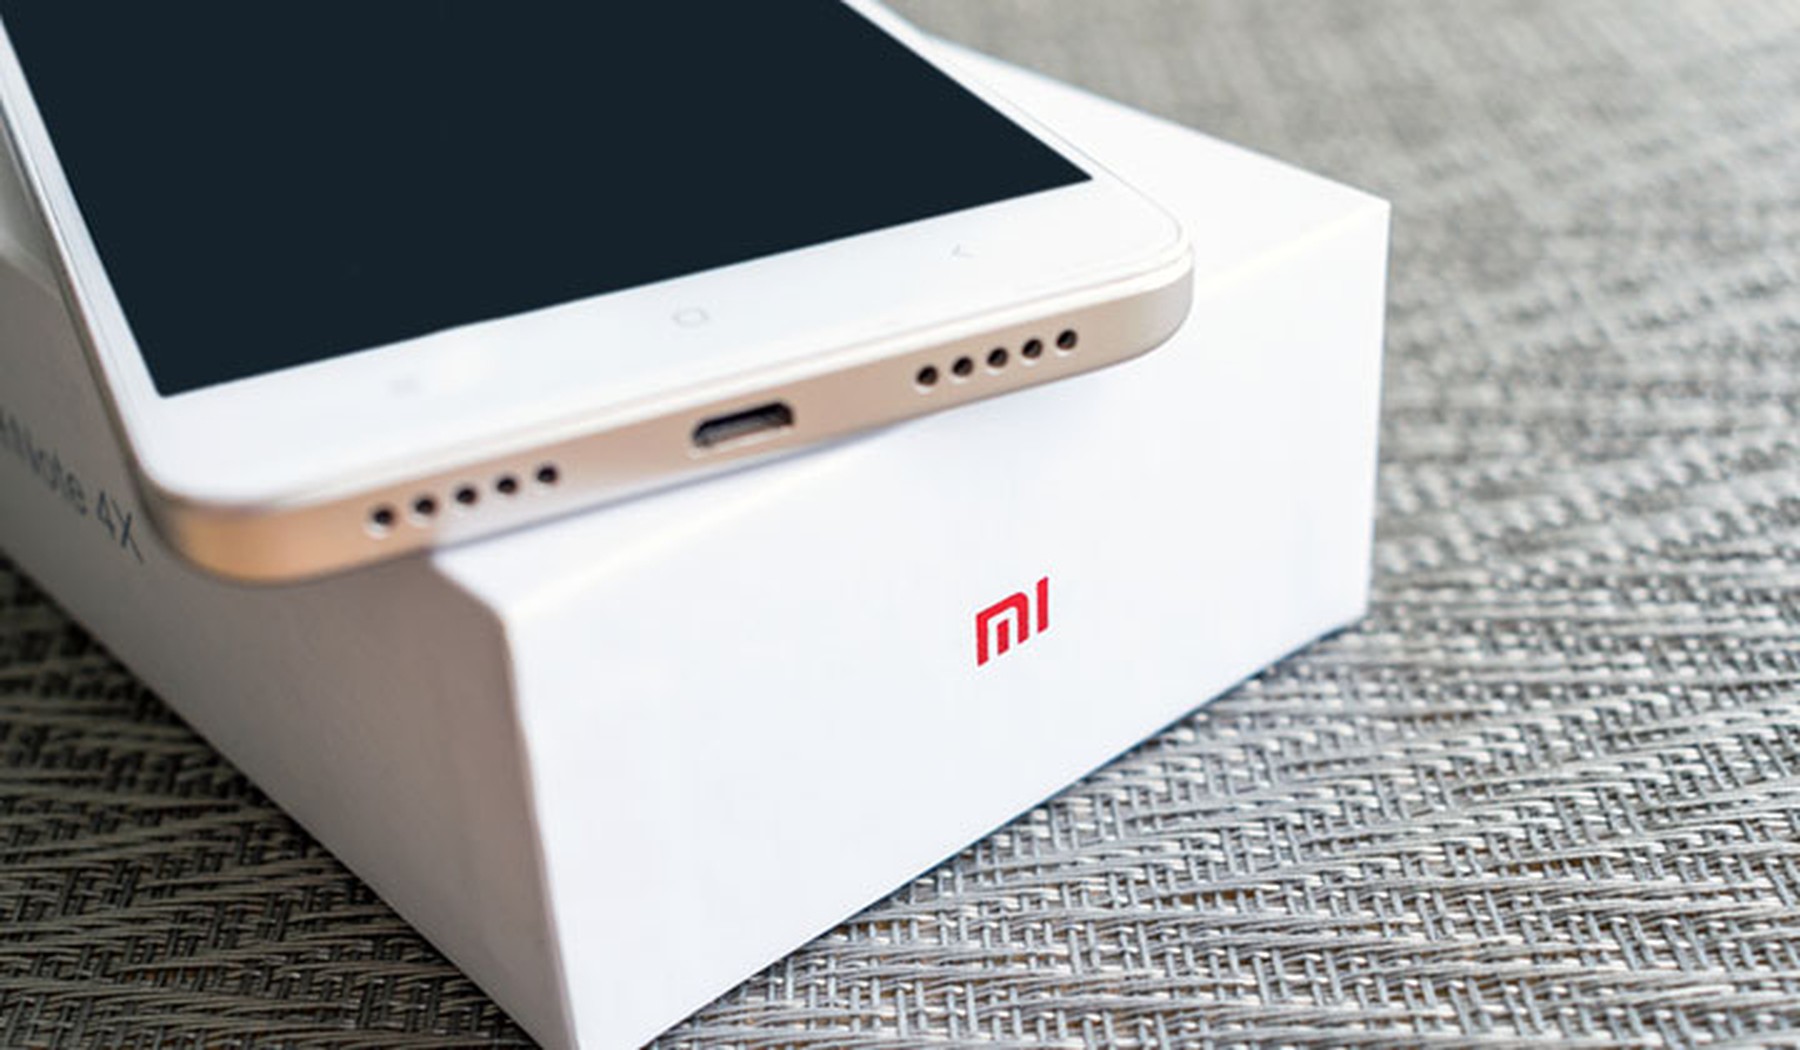 Teléfono nuevo sobre su caja con el logo de Xiaomi